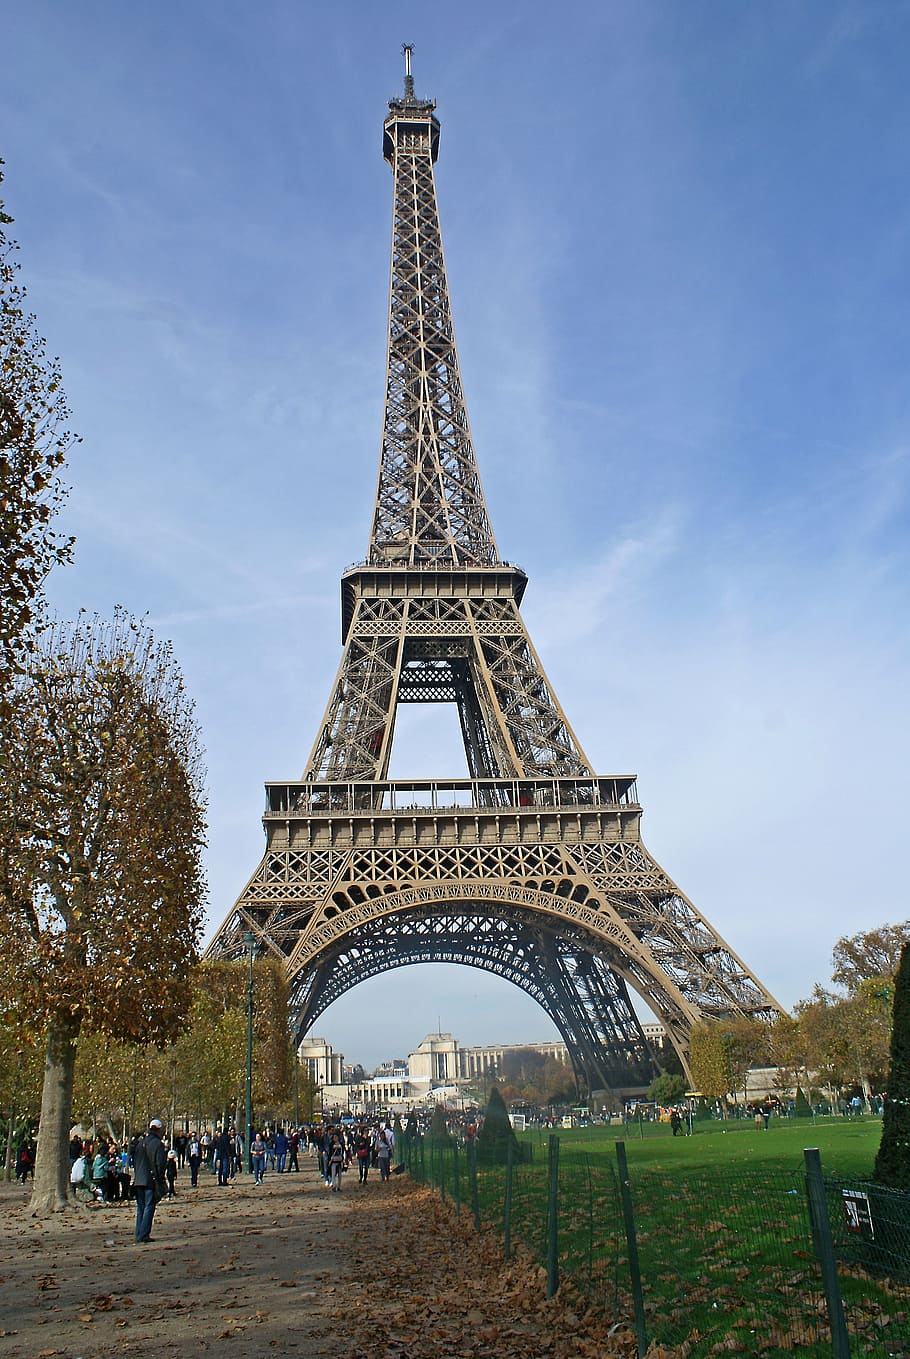 タワー, エッフェル塔, パリの中心, 建物, 建築, 都市, シンボル, エンジニア, 公園, ツアー